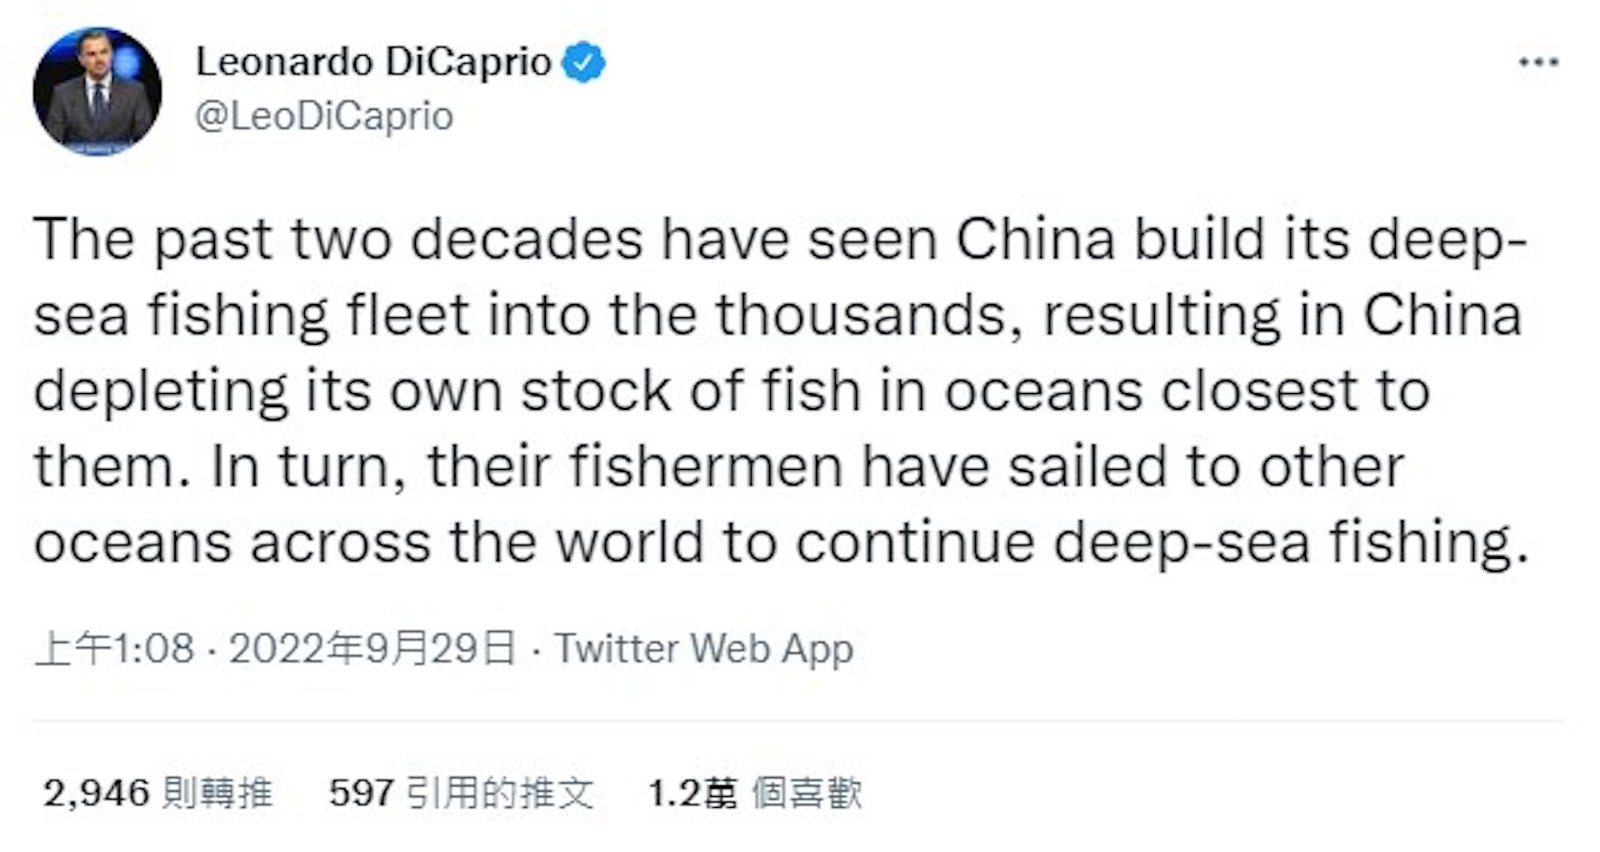 里奥纳度表示在过去的二十年里，中国将深海捕捞船队扩大到数千艘，导致中国已经耗尽近海的鱼类资源。